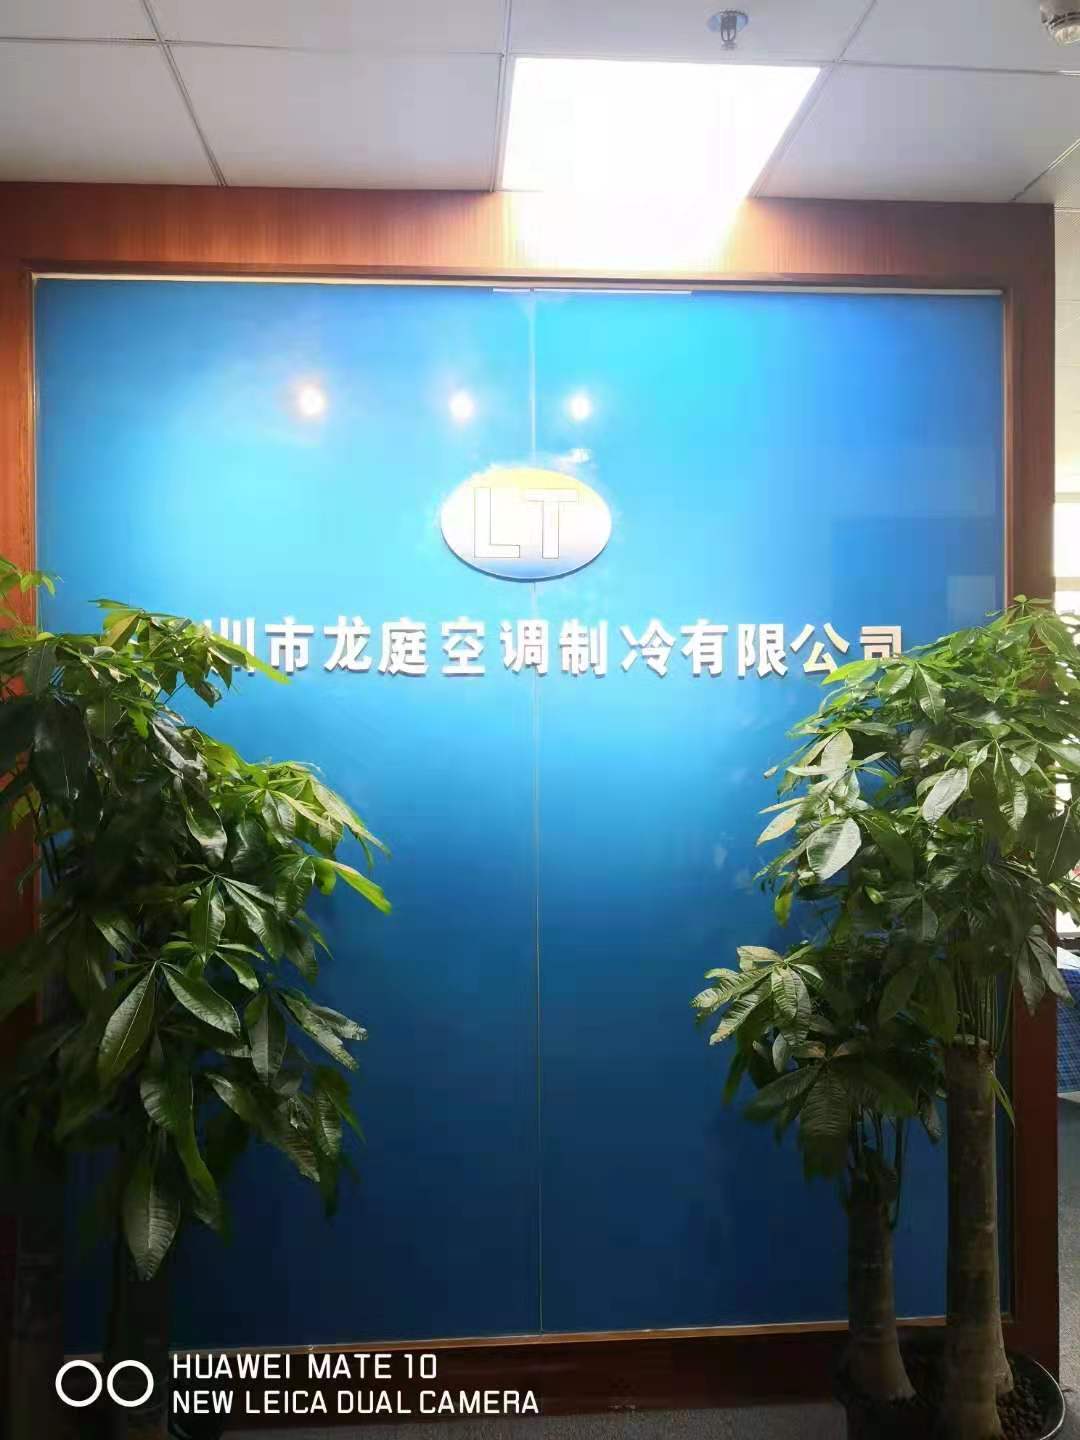 深圳市龙庭空调制冷有限公司